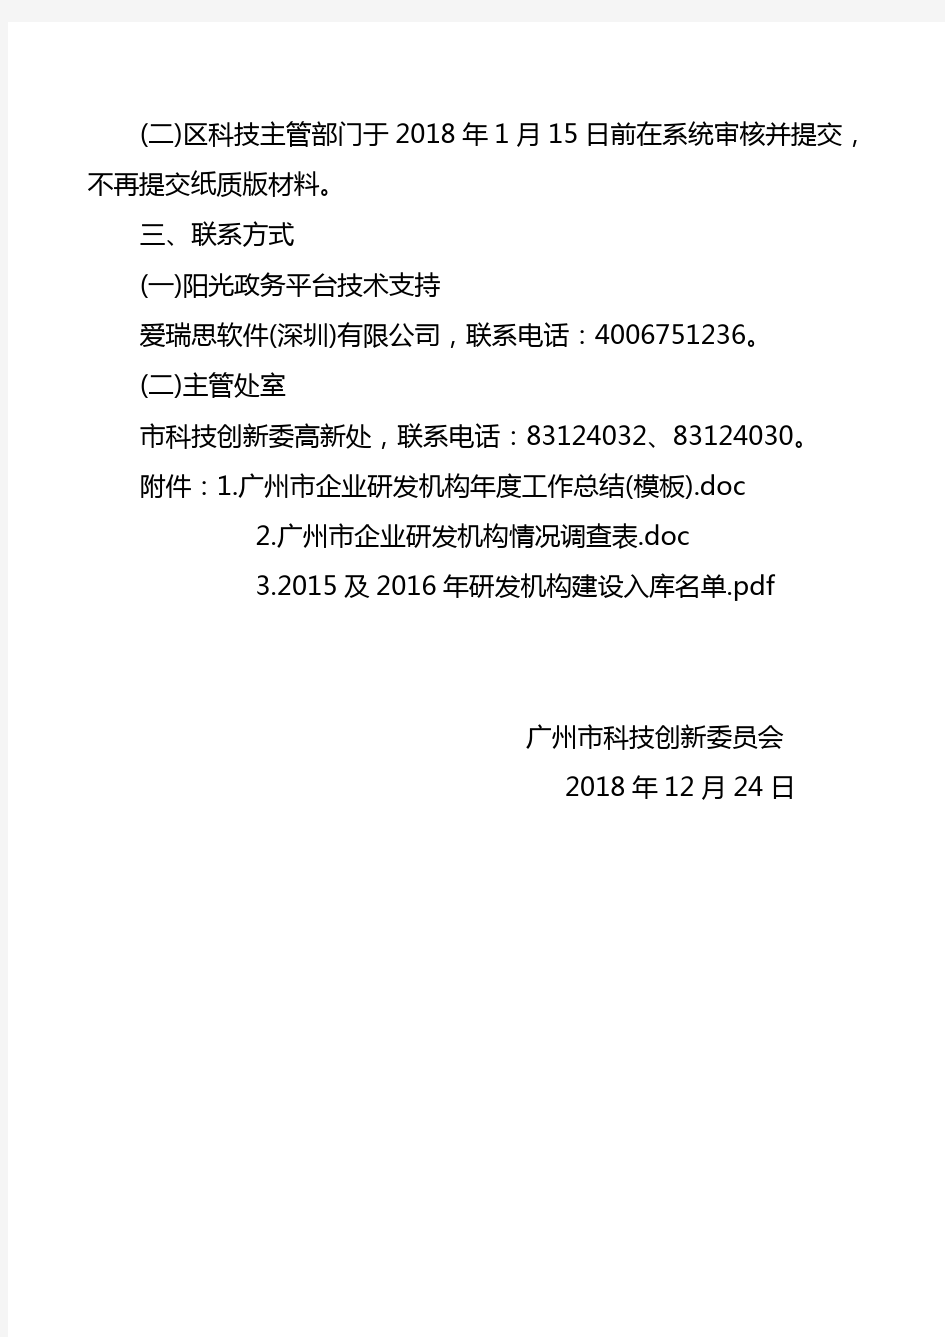 广州市科技创新委员会关于报送广州市企业研究开发机构年度